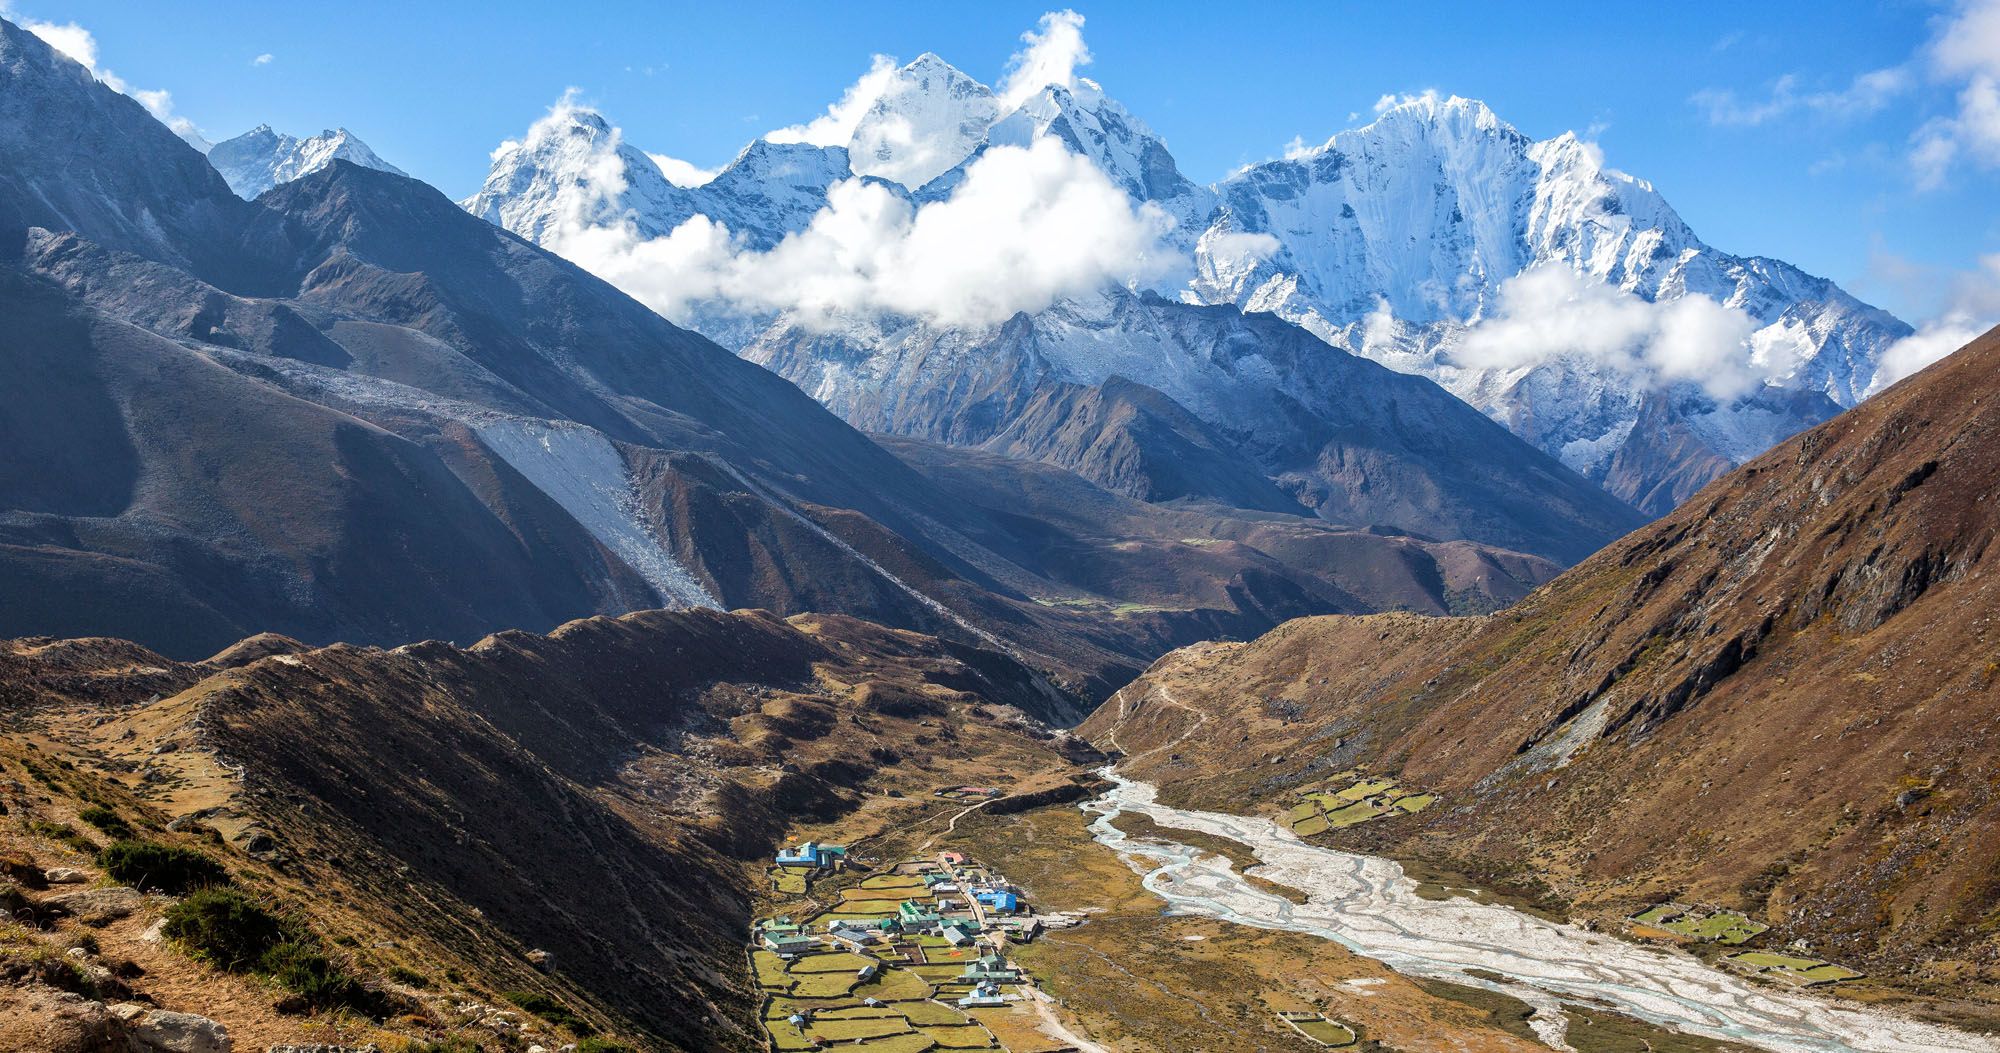 特征图像“18大相片Everest基础阵营Trek